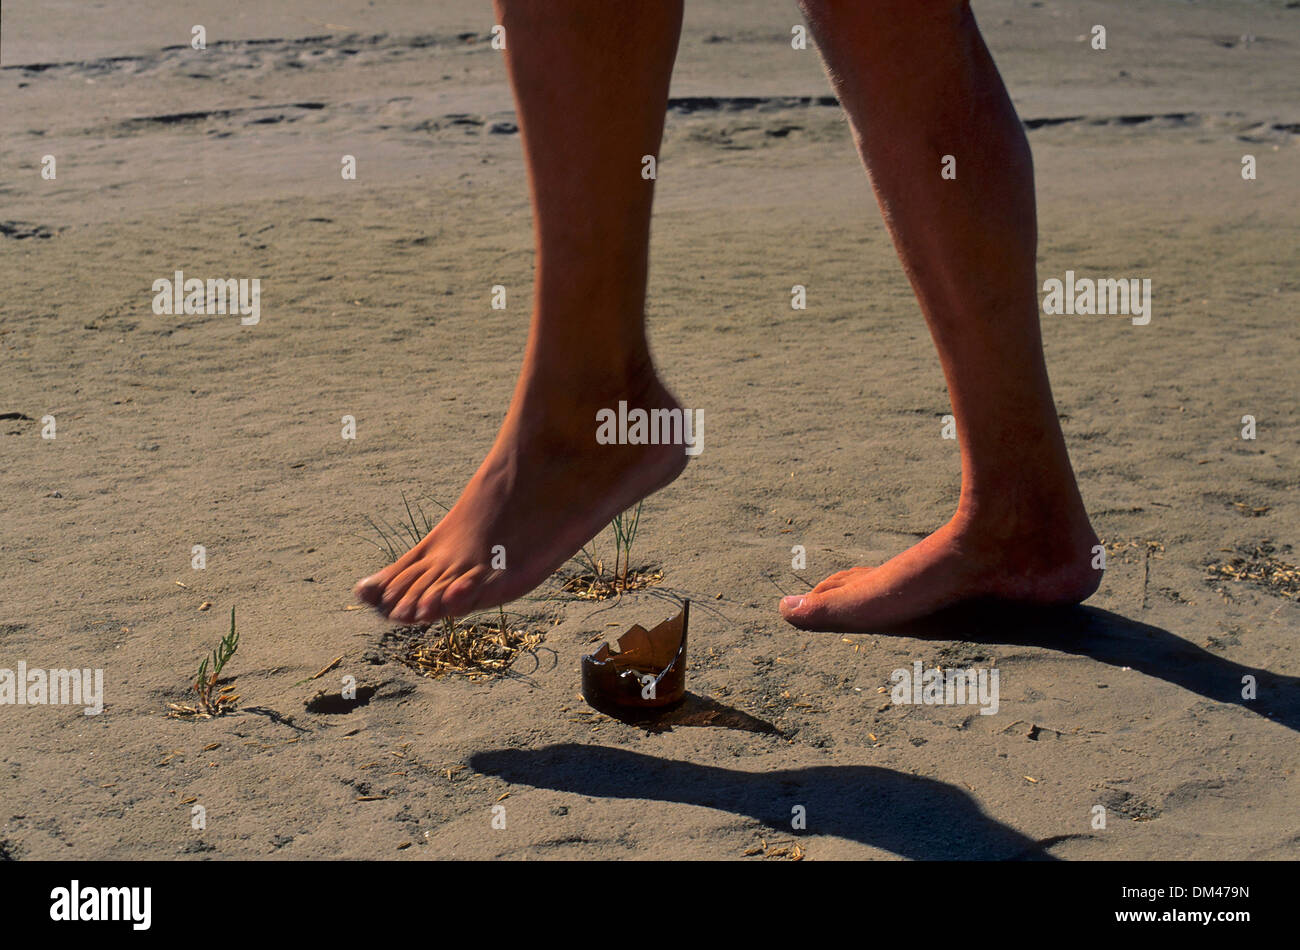 L'Écharde de fond de la bouteille sur la plage, pieds nus, Scherbe, Flaschenboden am Strand, 'the fashion Banque D'Images